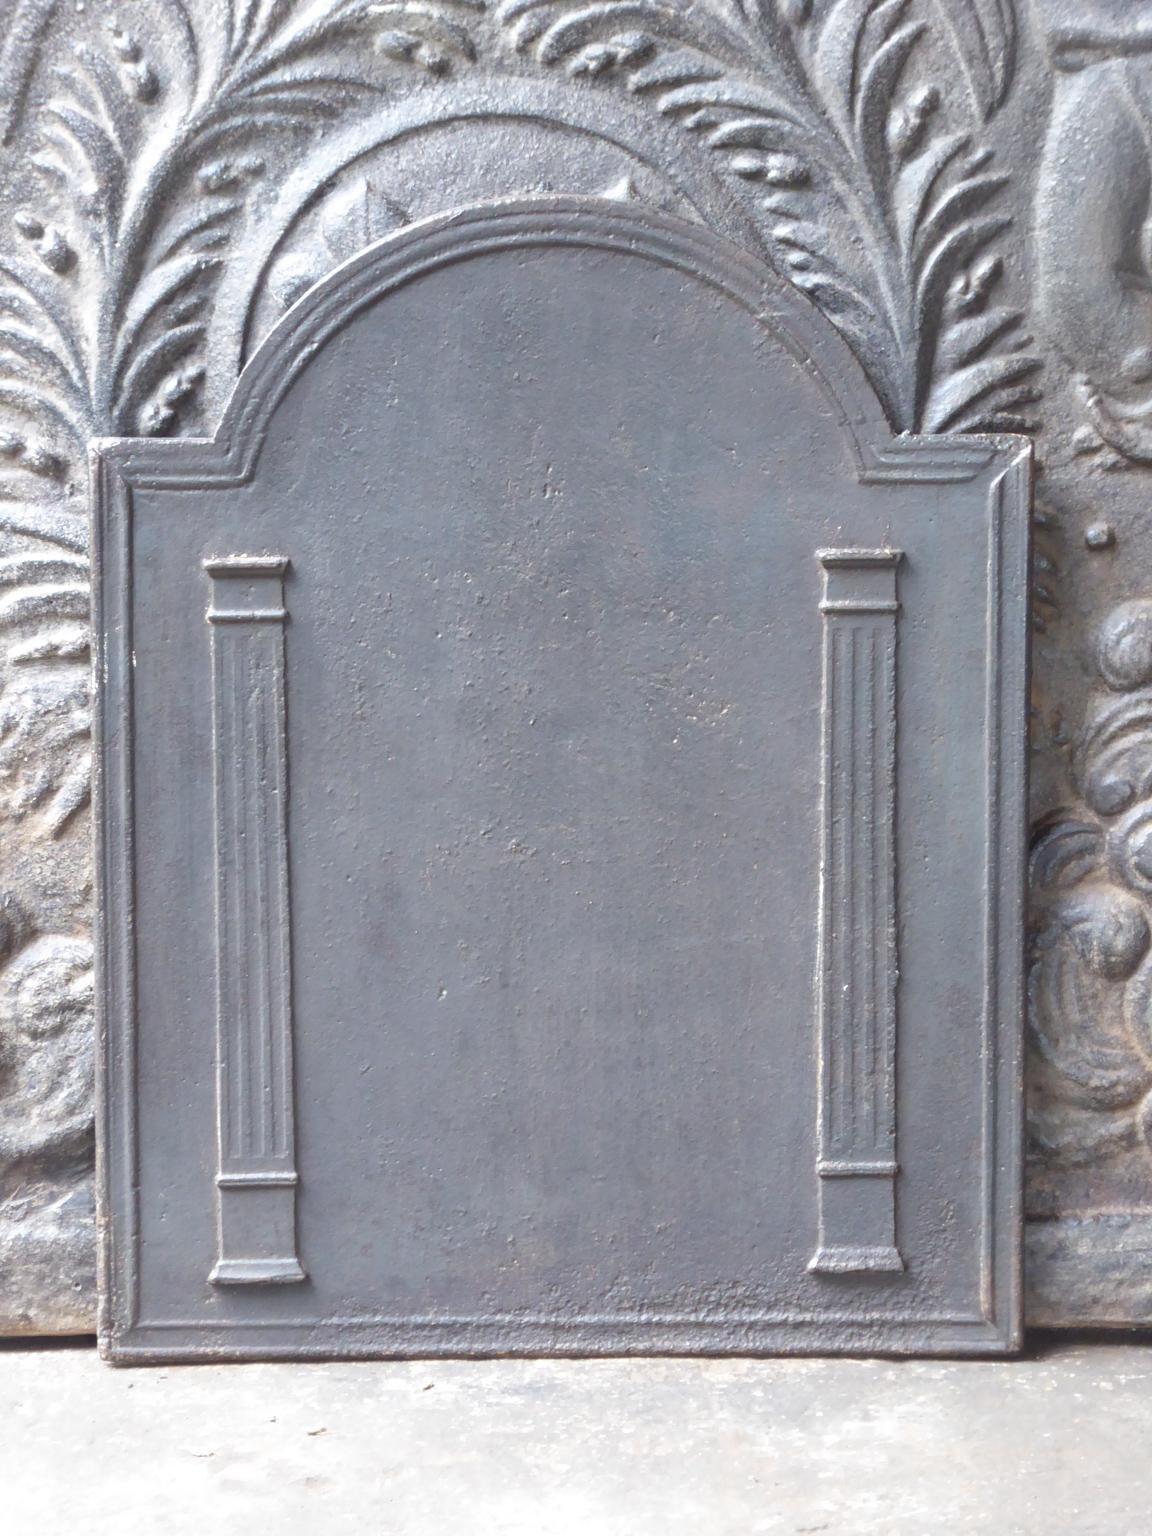 Plaque de cheminée néoclassique française du XIXe siècle avec deux piliers de la liberté. Les piliers symbolisent la valeur liberté, l'une des trois valeurs de la Révolution française. 

La plaque de cheminée est en fonte et a une patine brune